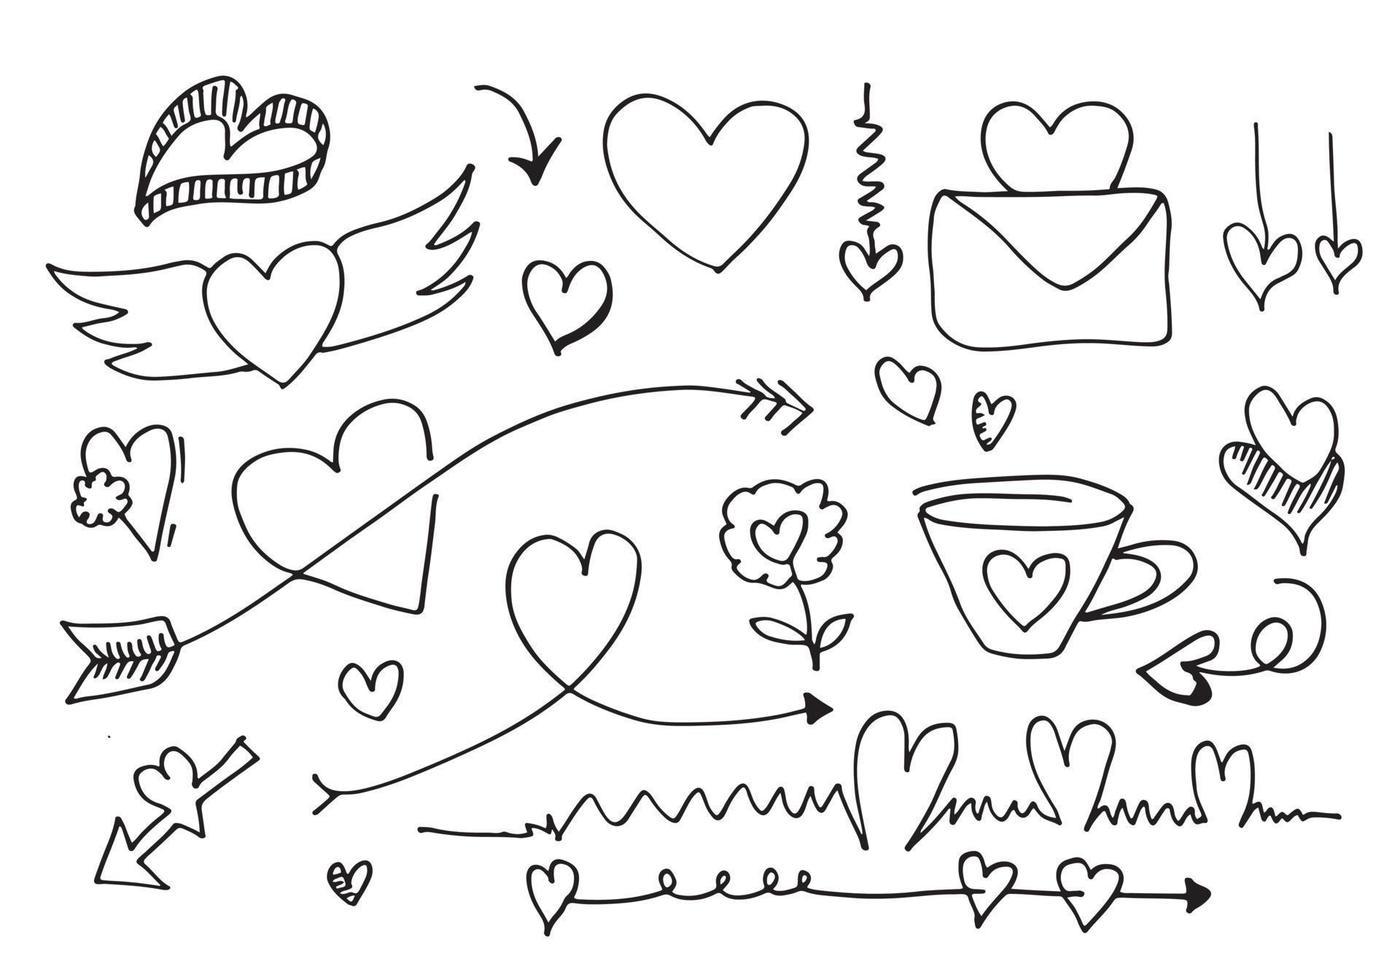 Satz von Liebe. Handzeichnung. Doodle-Stil. für Ihre Gestaltung. vektor